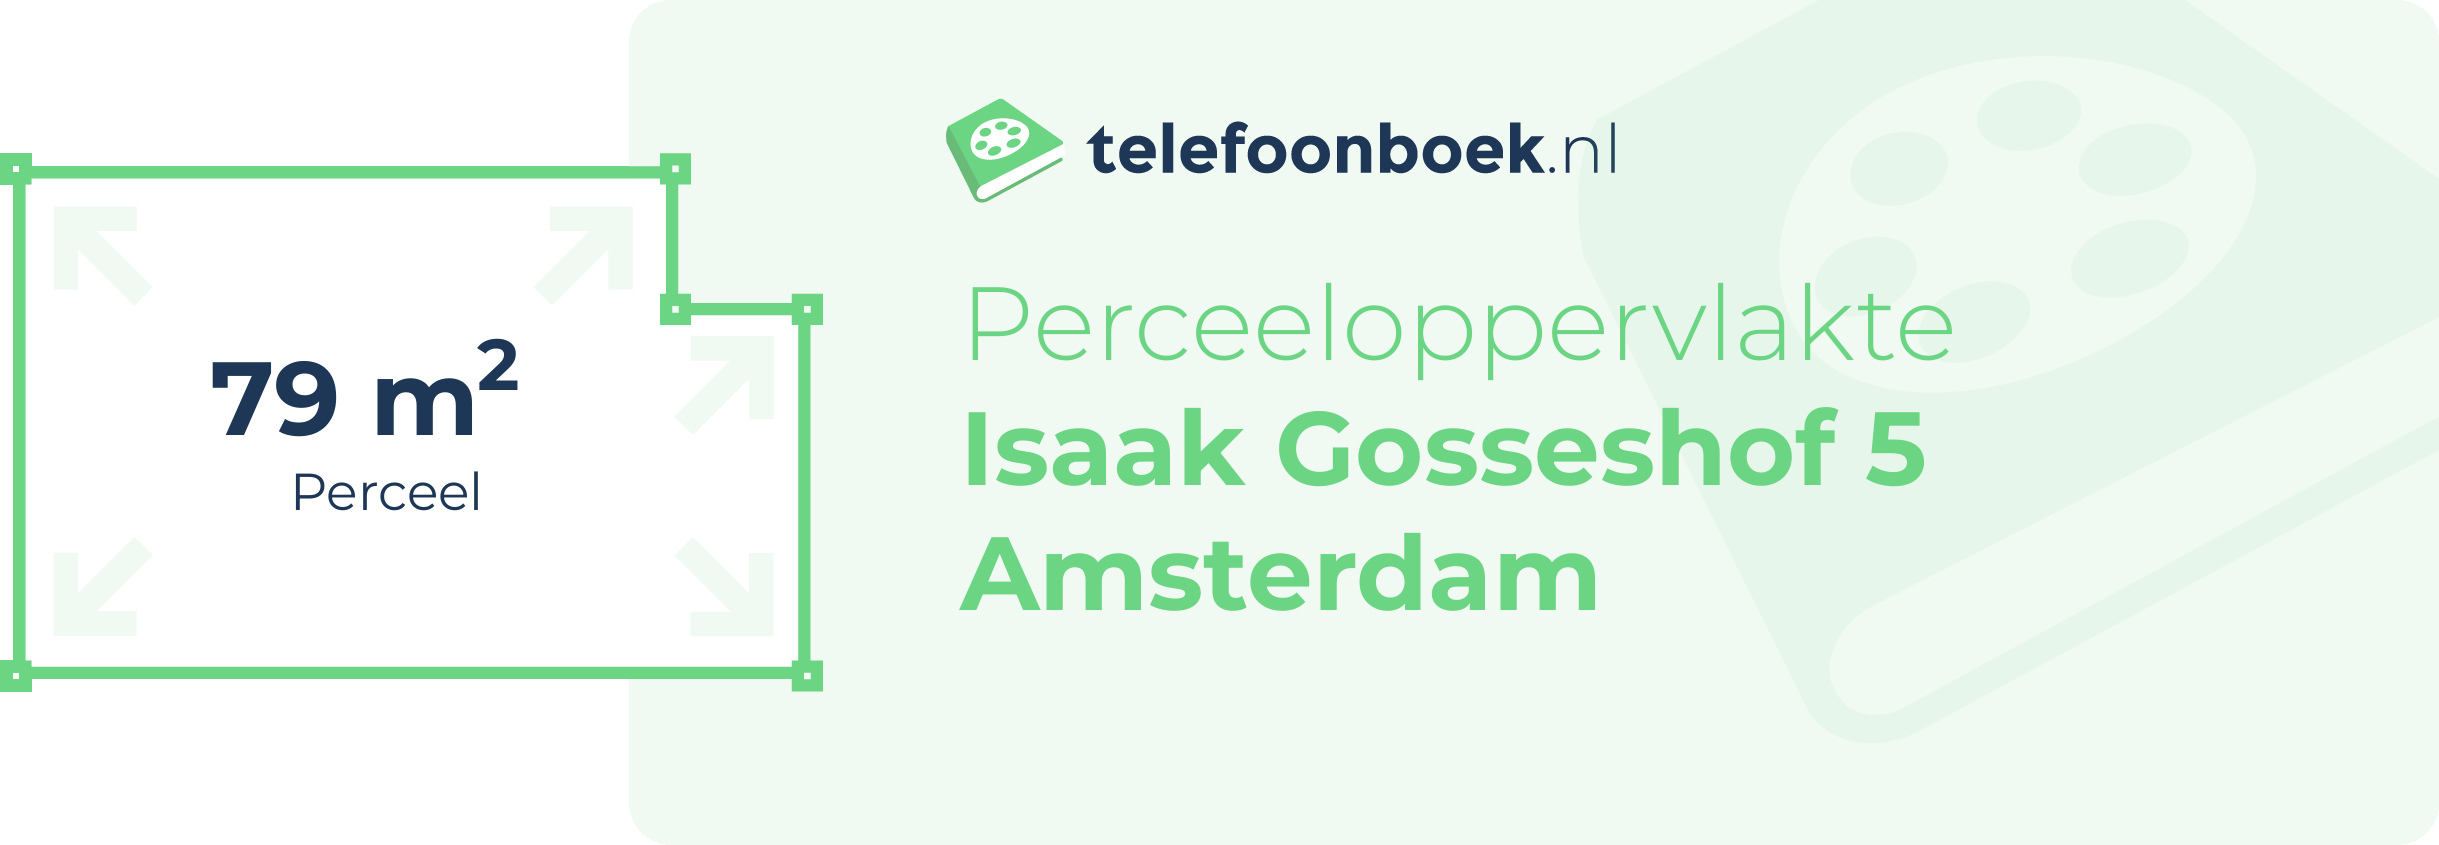 Perceeloppervlakte Isaak Gosseshof 5 Amsterdam